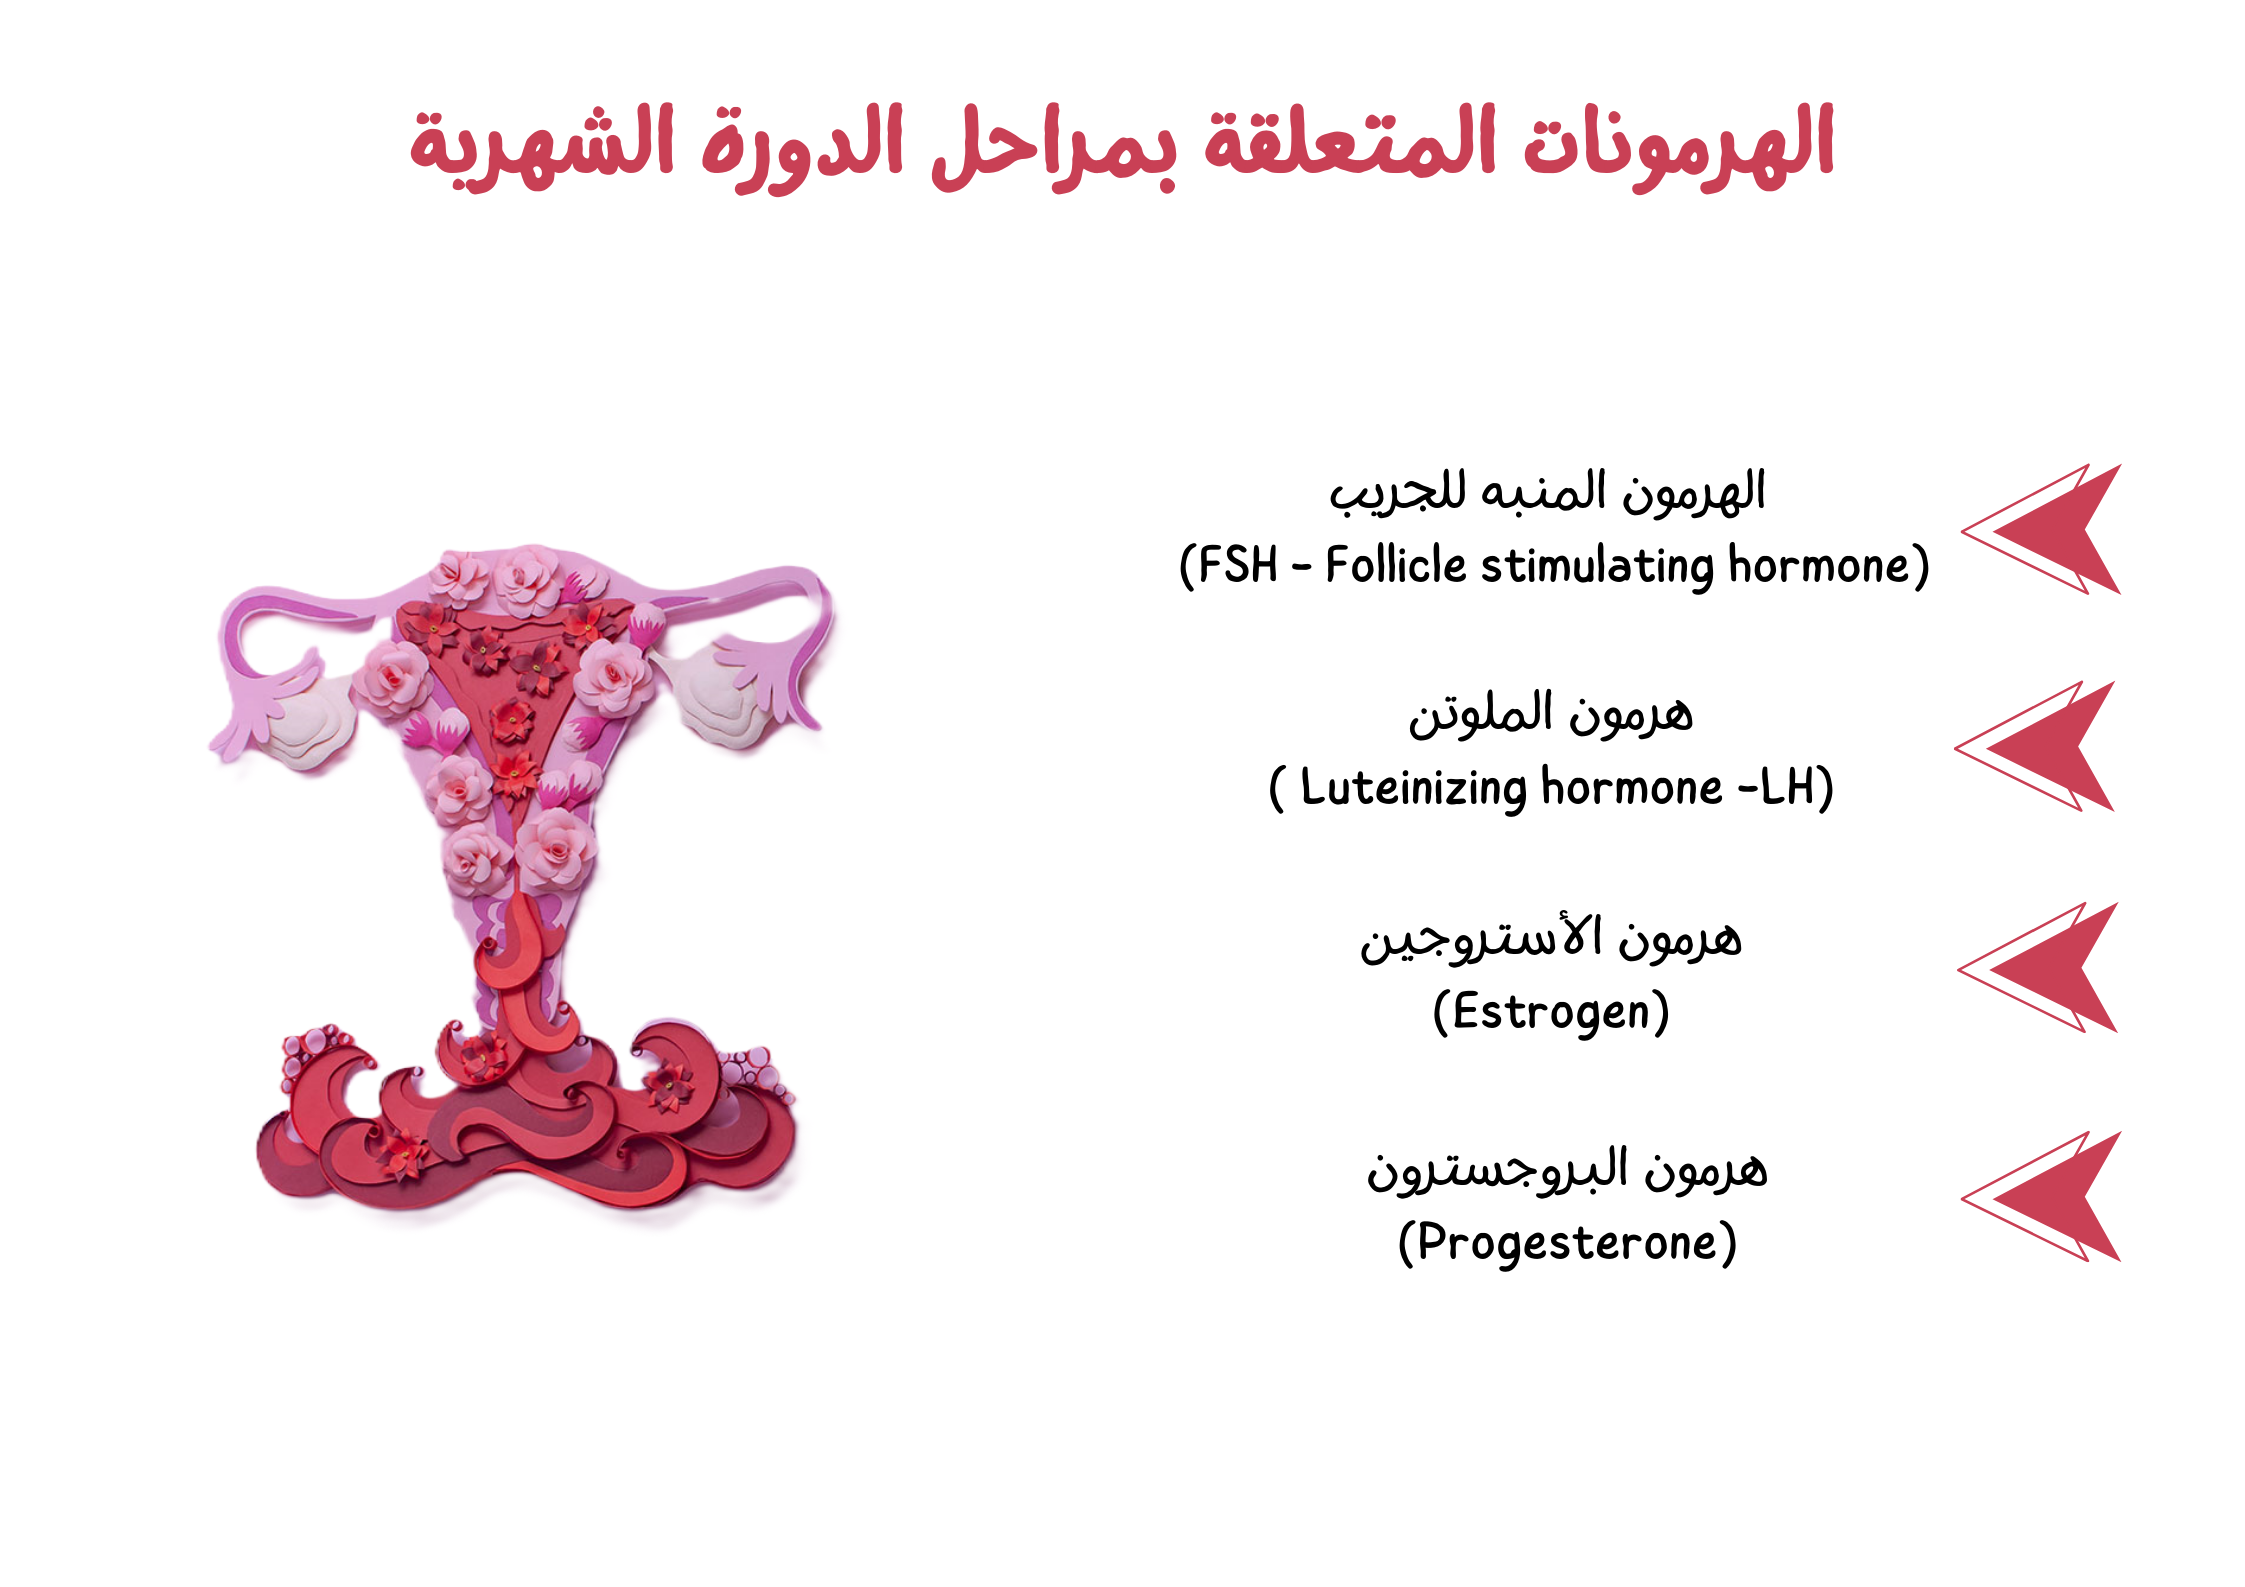 الهرمونات المتعلقة بمراحل الدورة الشهرية	